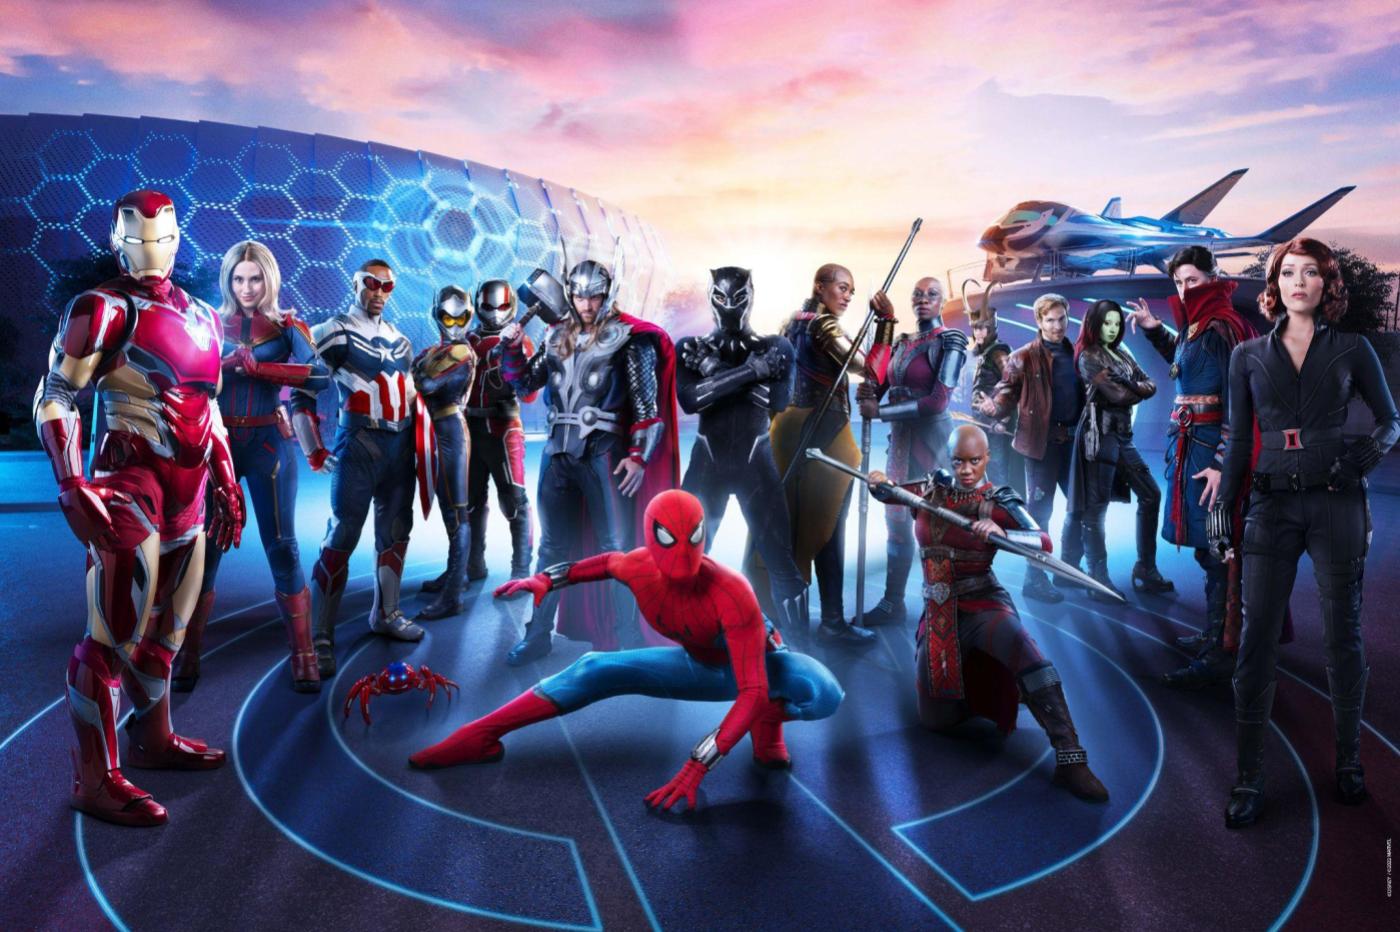 Image promotionnelle pour l'ouverture du Avengers Campus montrant tous les super héros dans le nouveau campus de Paris